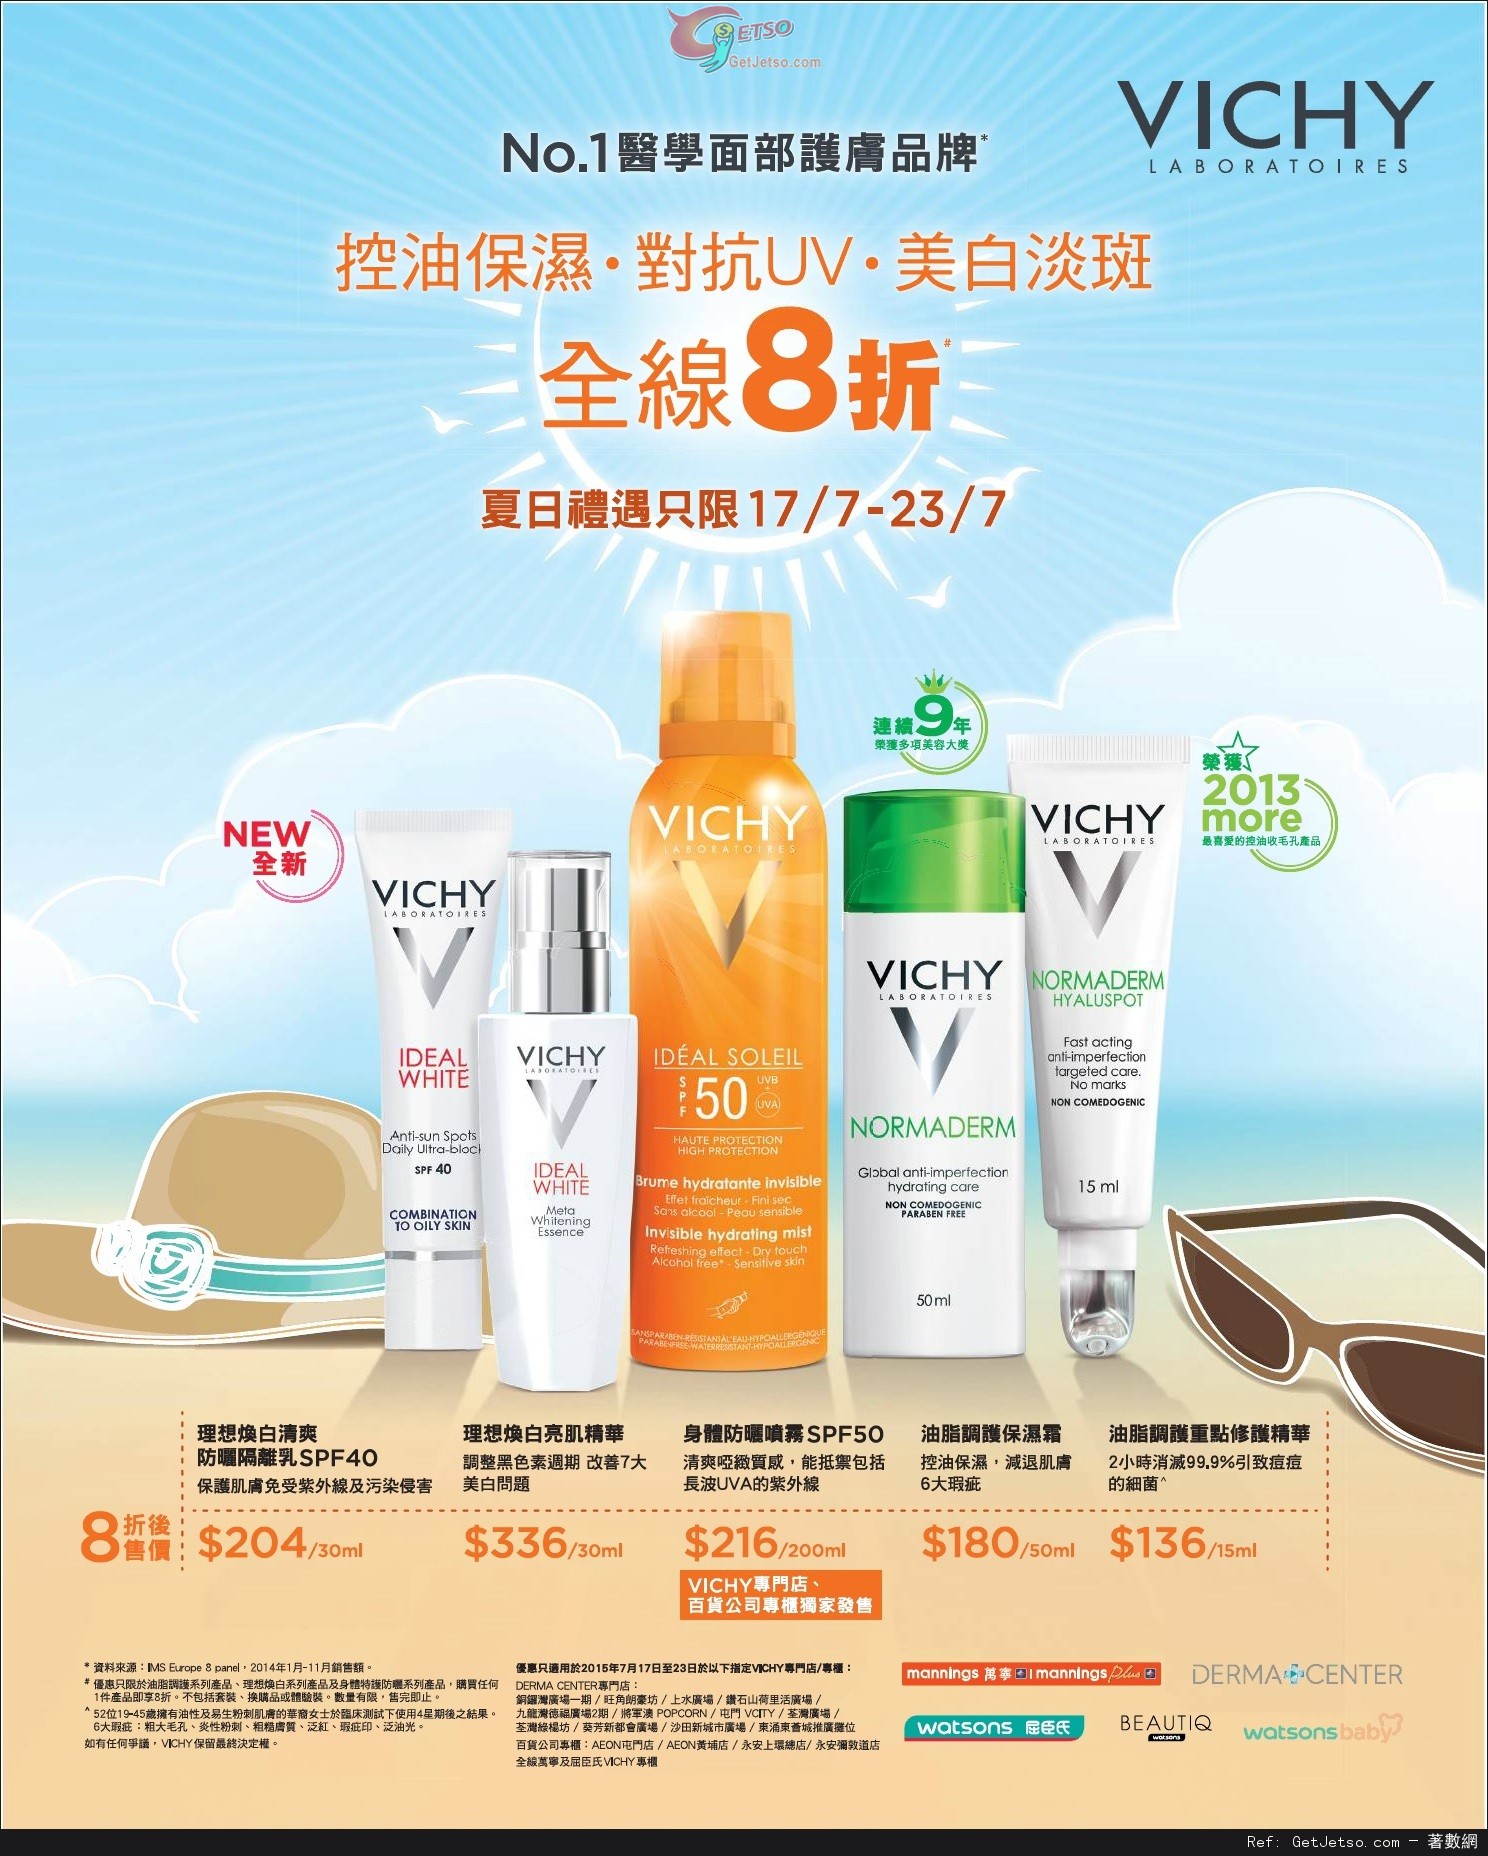 VICHY 三大系列產品全線8折優惠(至15年7月23日)圖片1